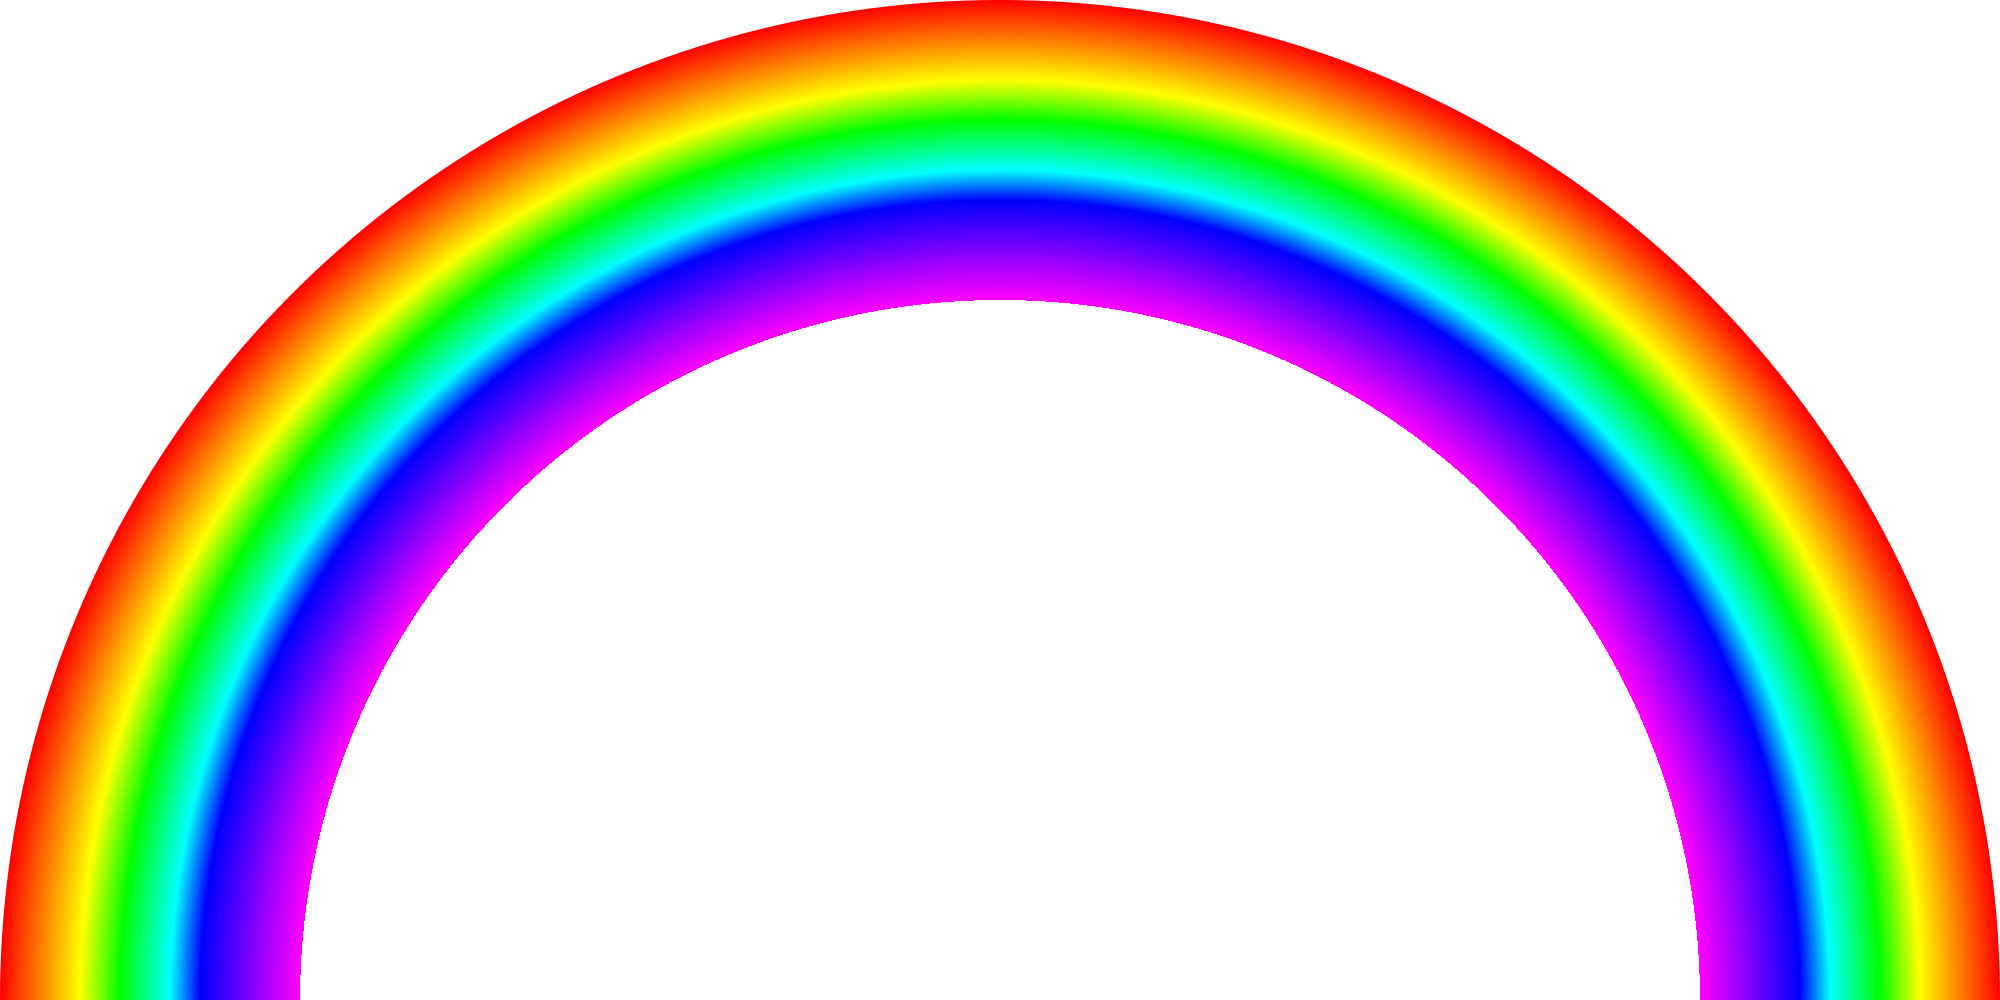 The Rainbow - Riset